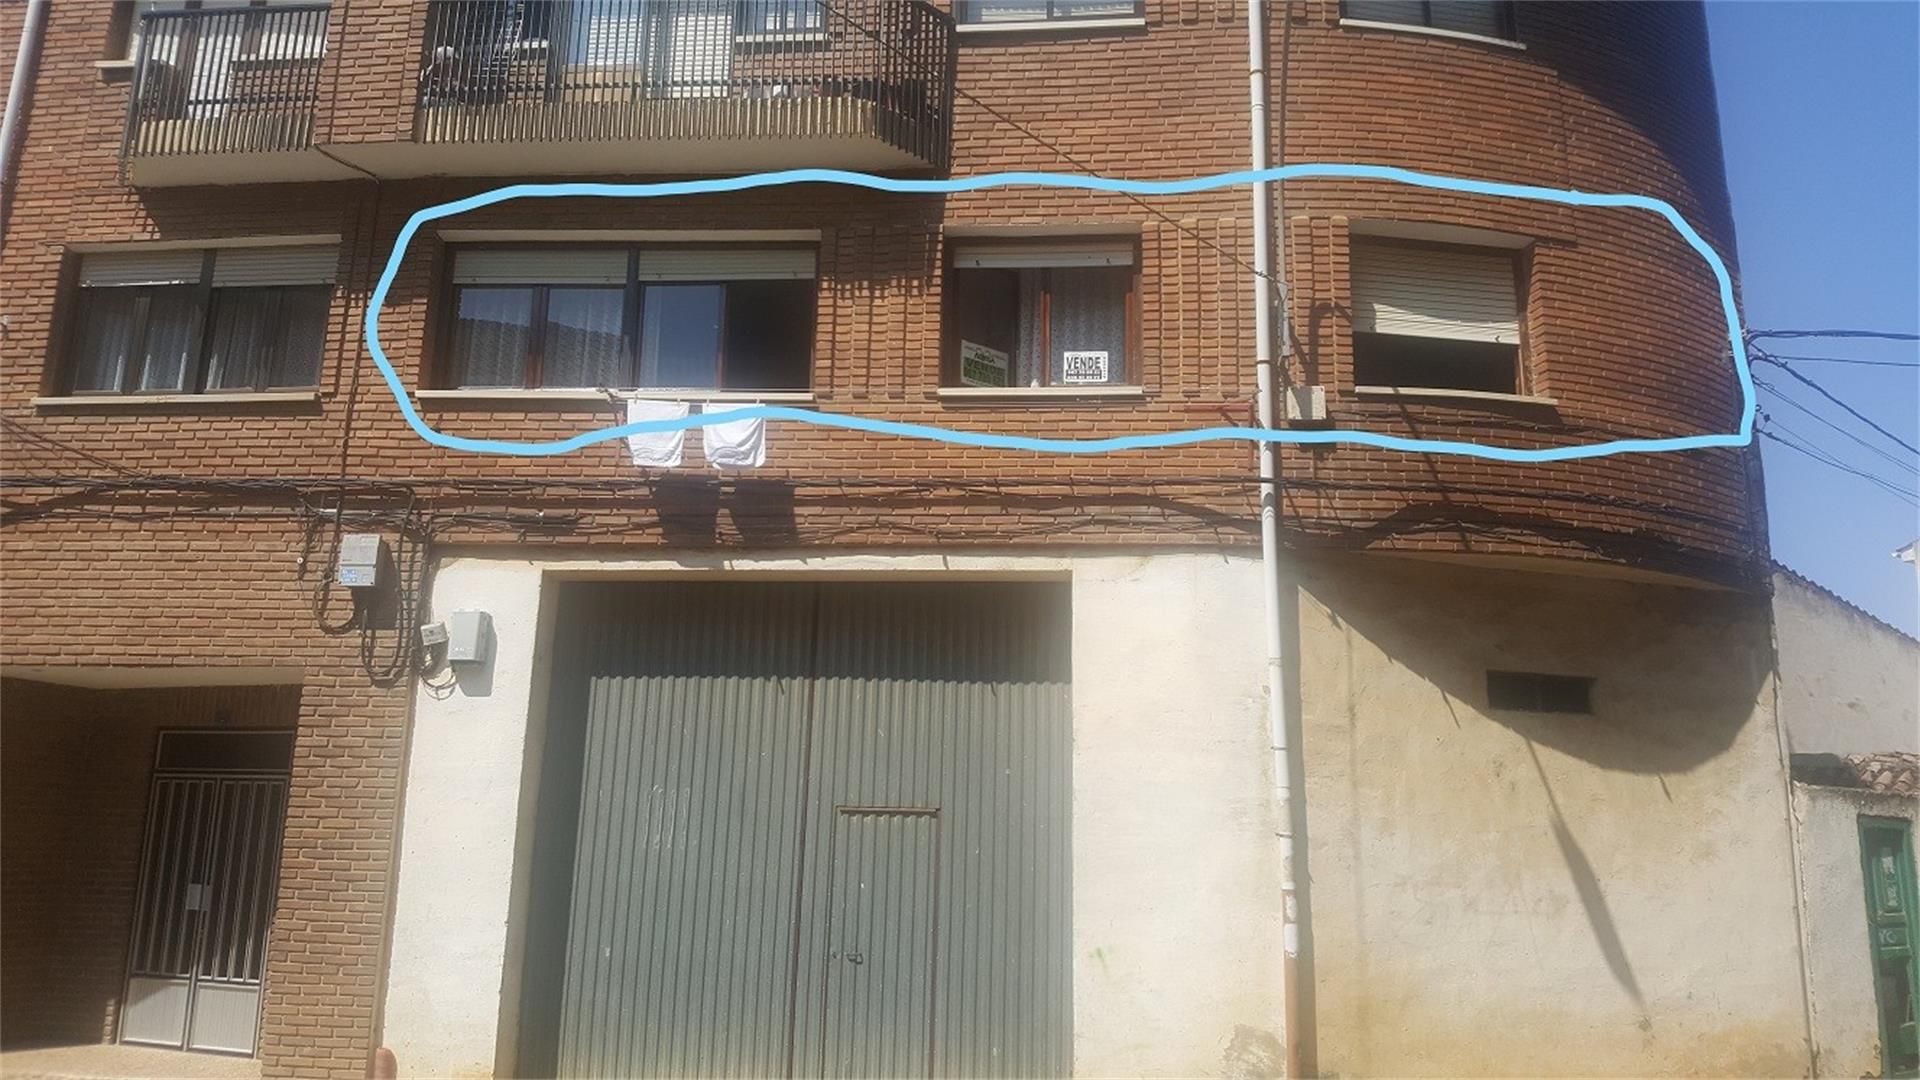 20 Viviendas y casas en venta en Sahagún | fotocasa